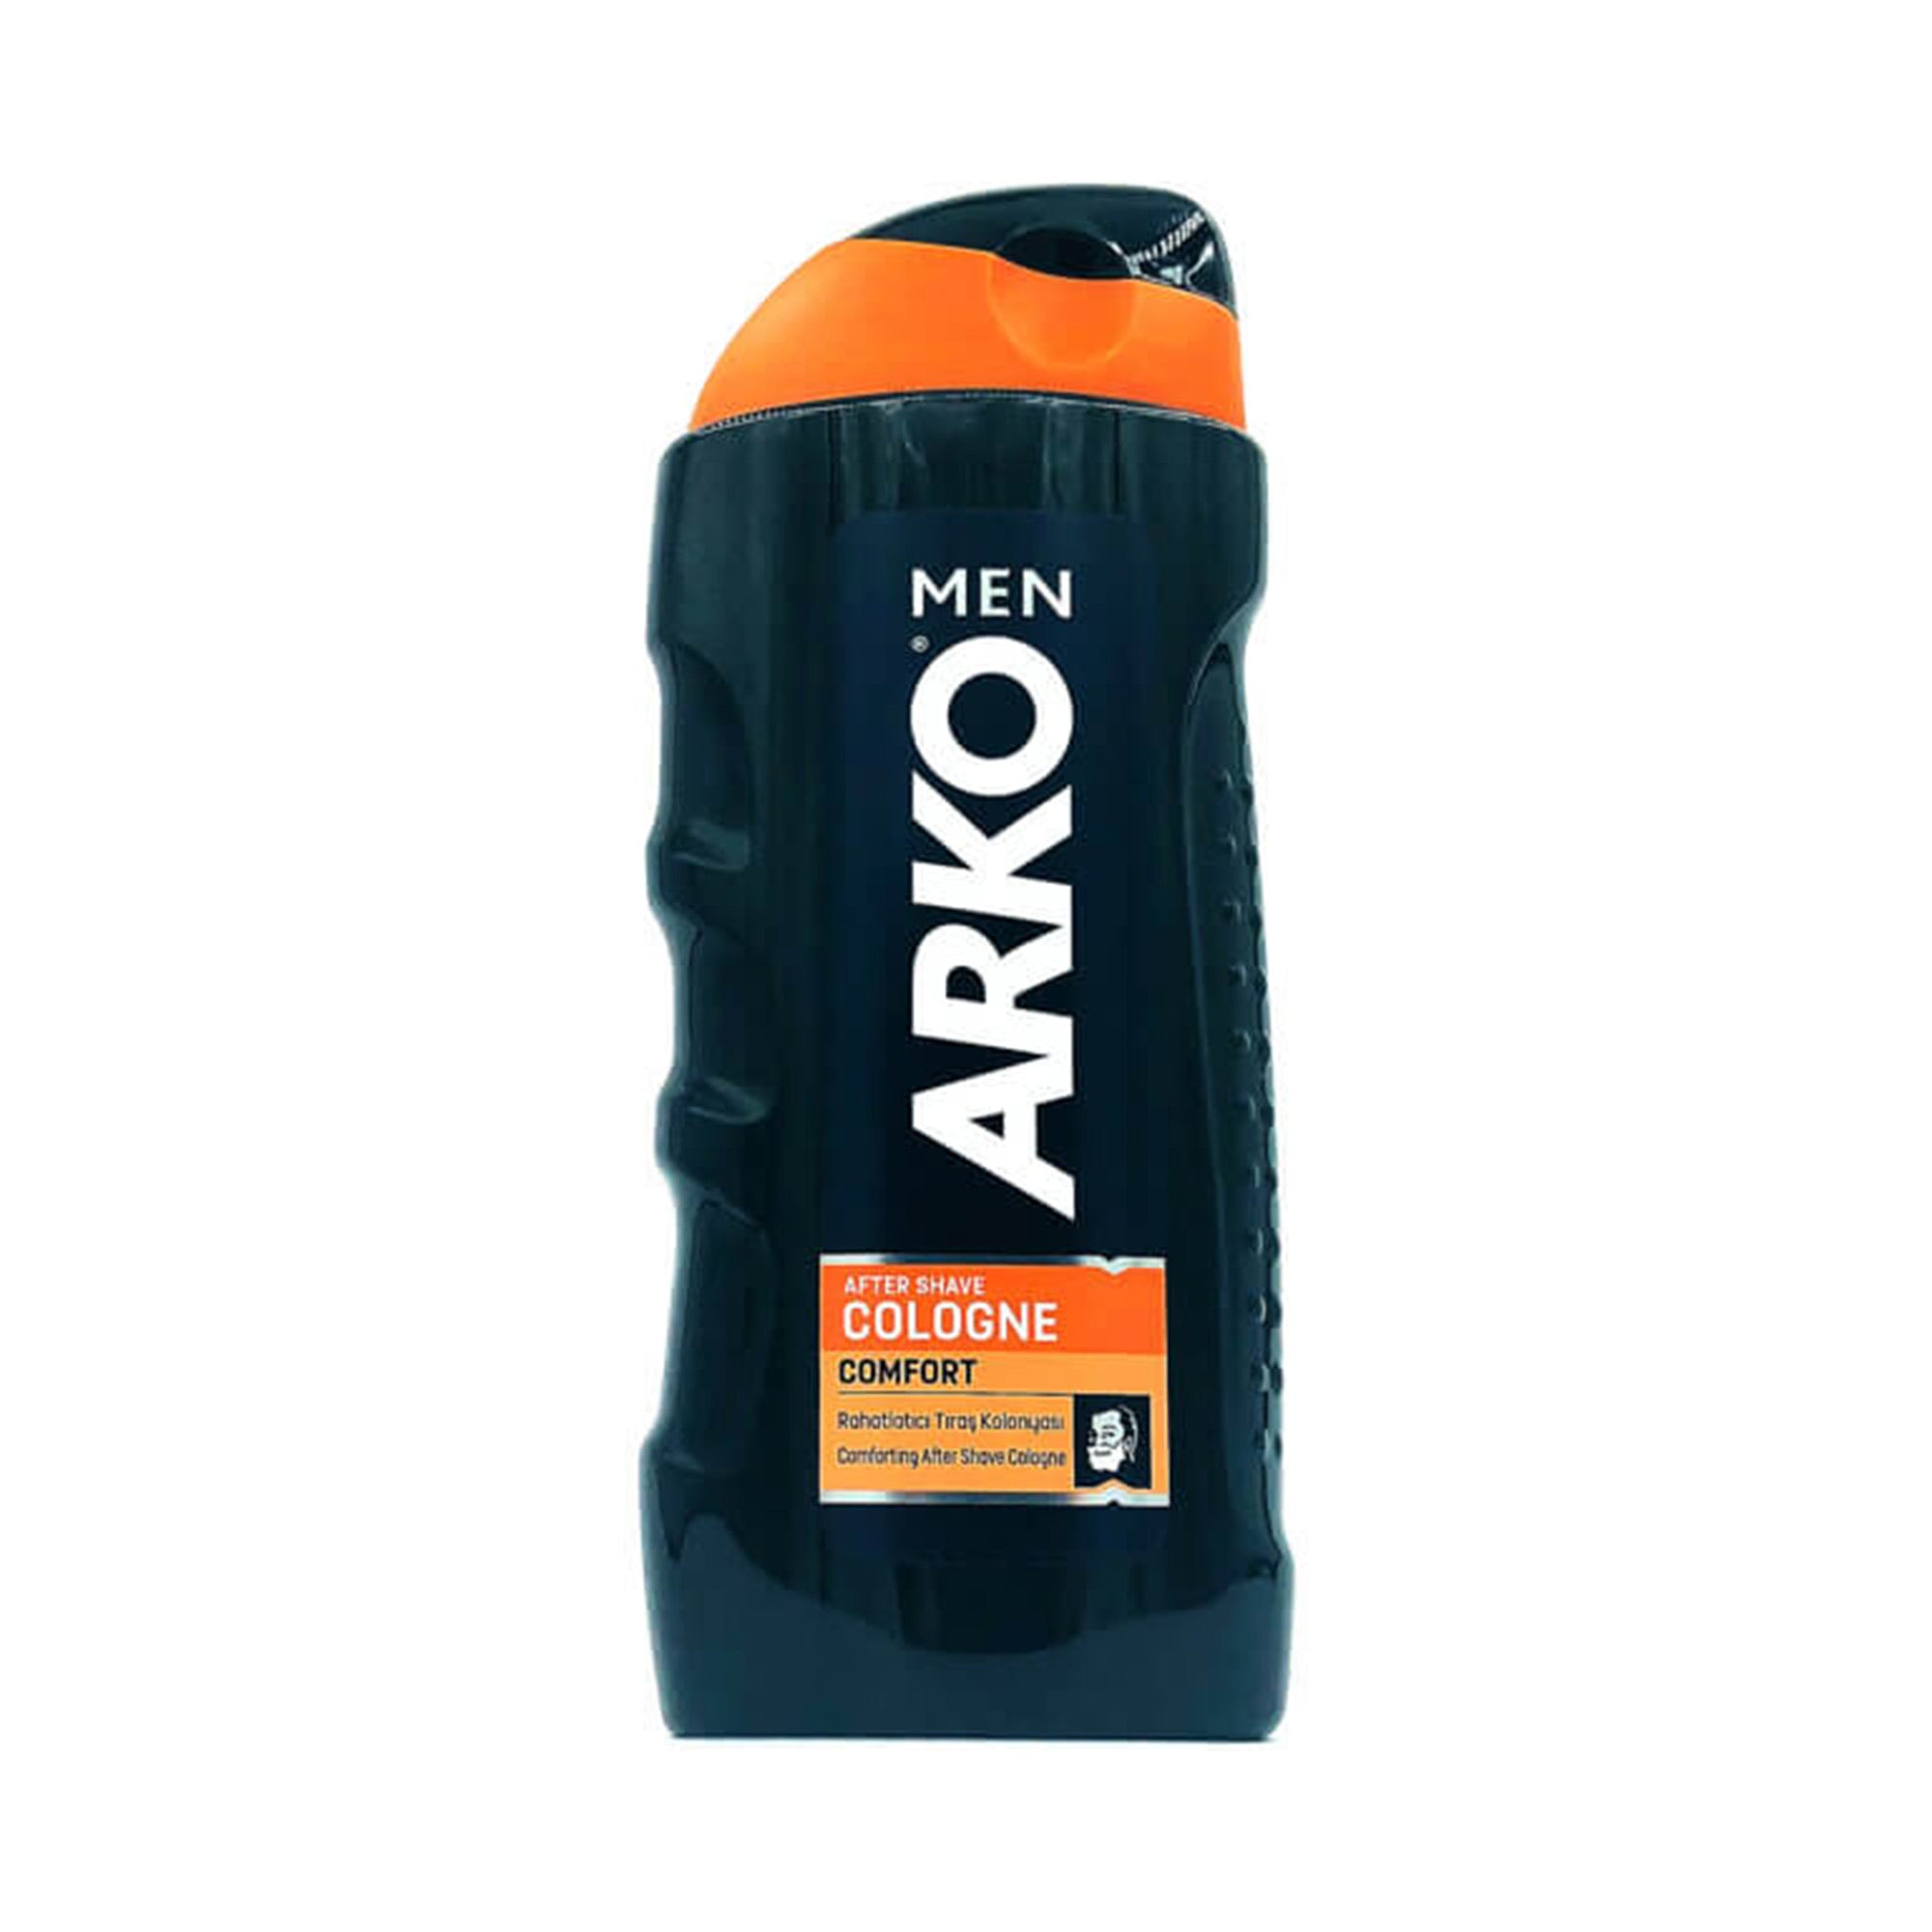 Arko - Men Aftershave Cologne Comfort 250ml